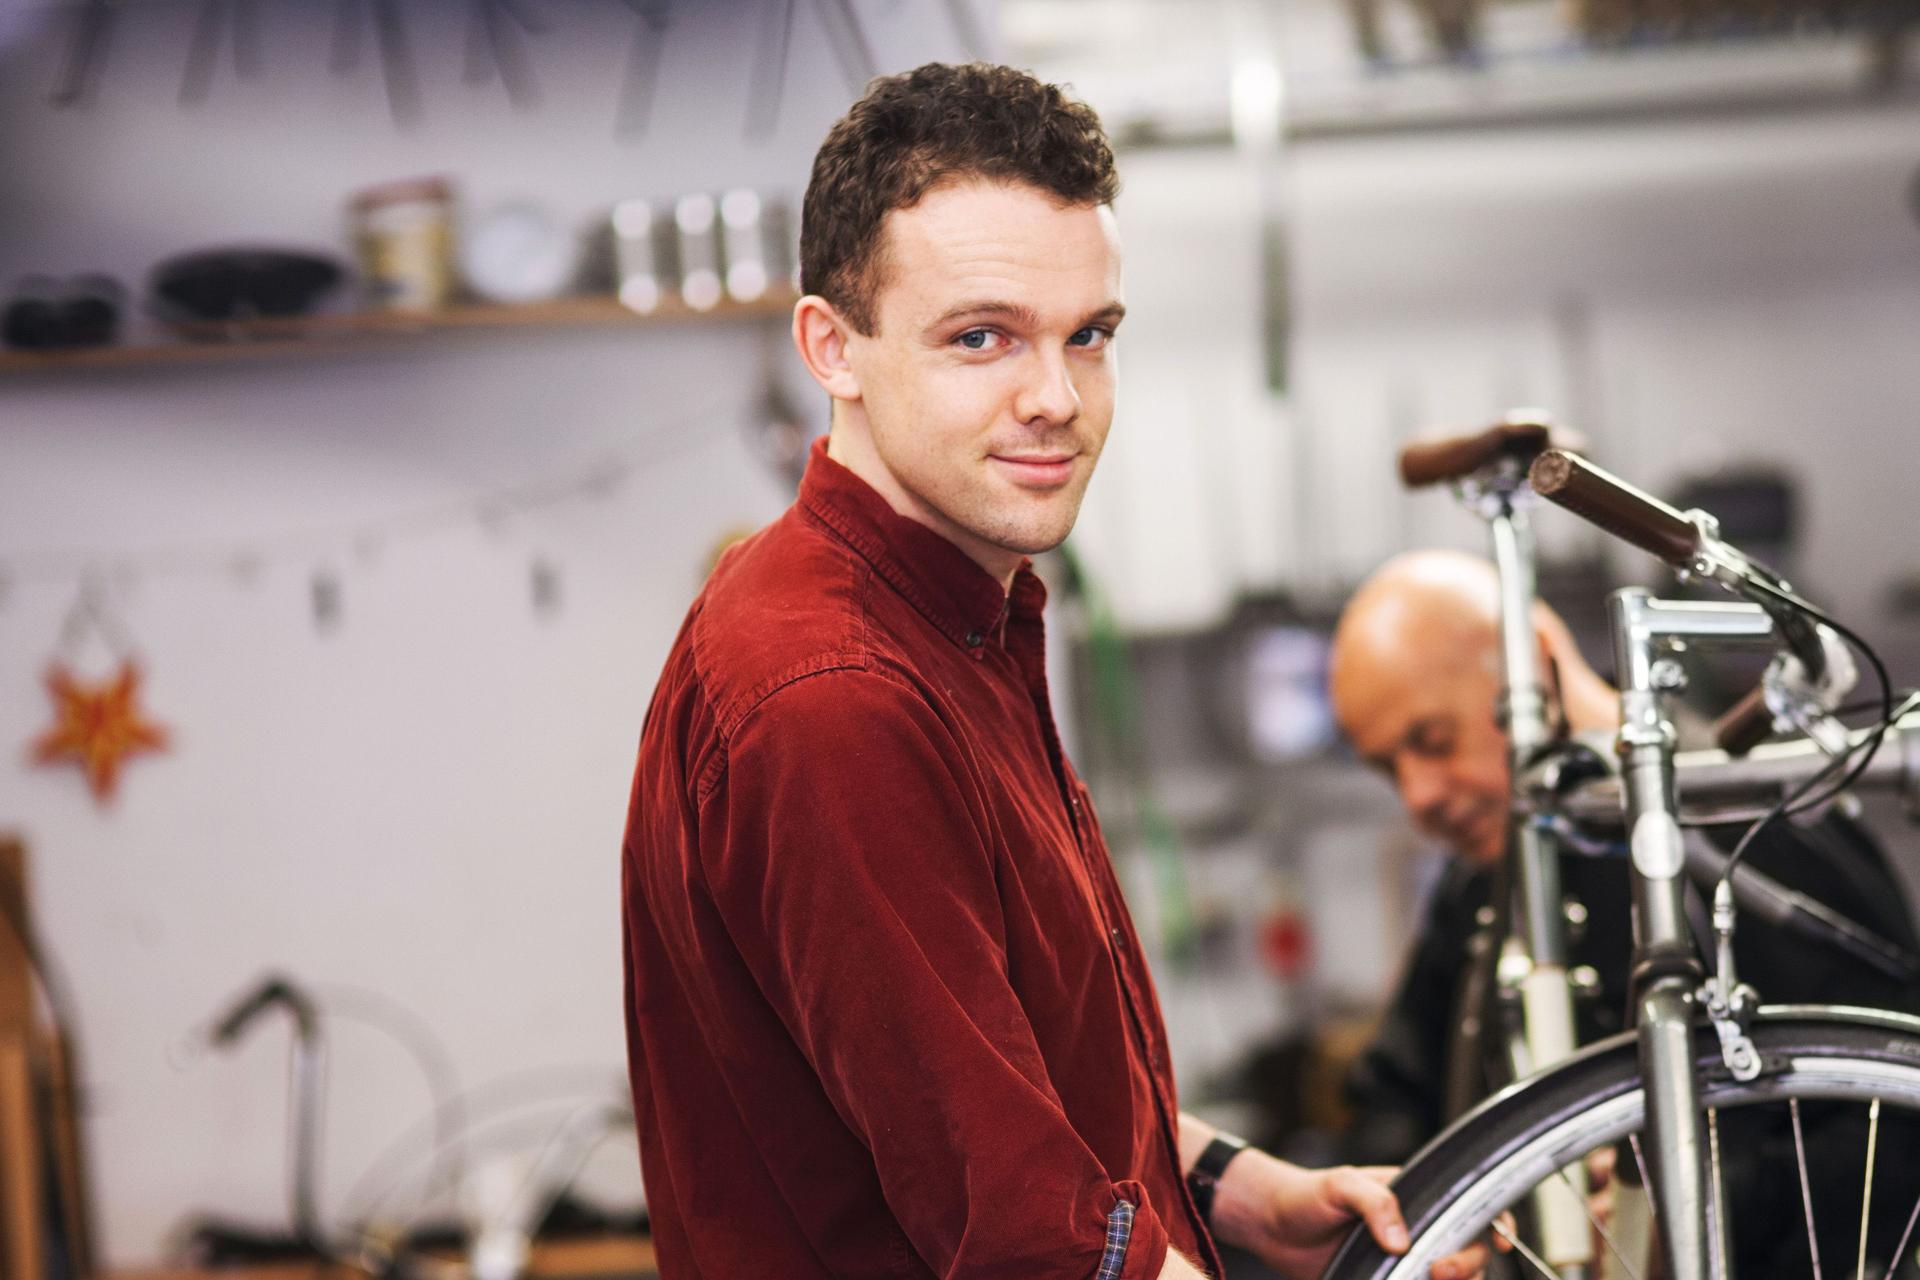 Ein junger Fahrradtechniker, der in einer Werkstatt an dem Vorderrad eines Fahrrads arbeitet und in die Kamera lächelt.